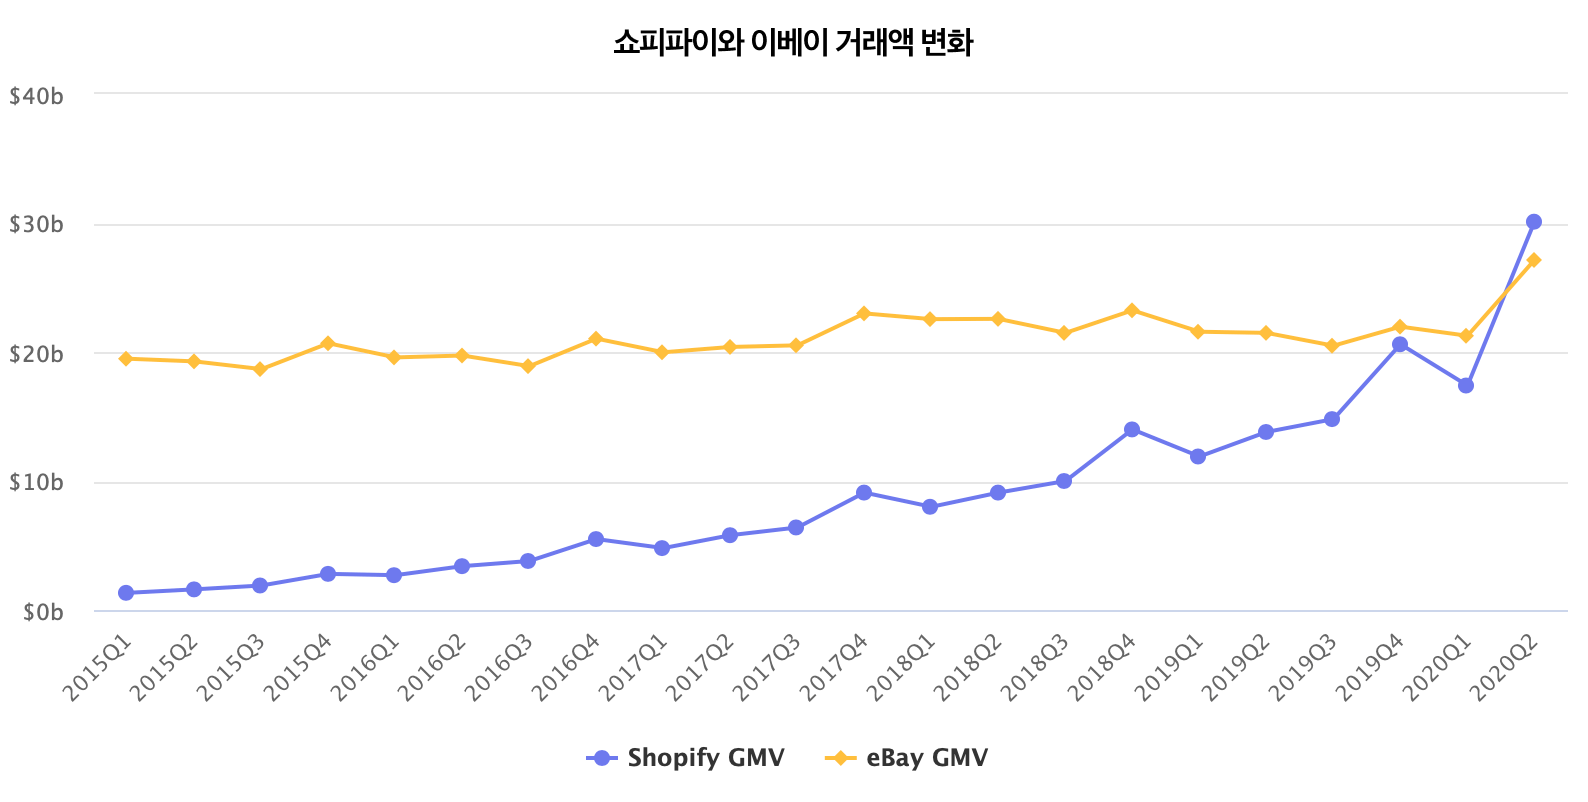 Shopify overtakes eBay